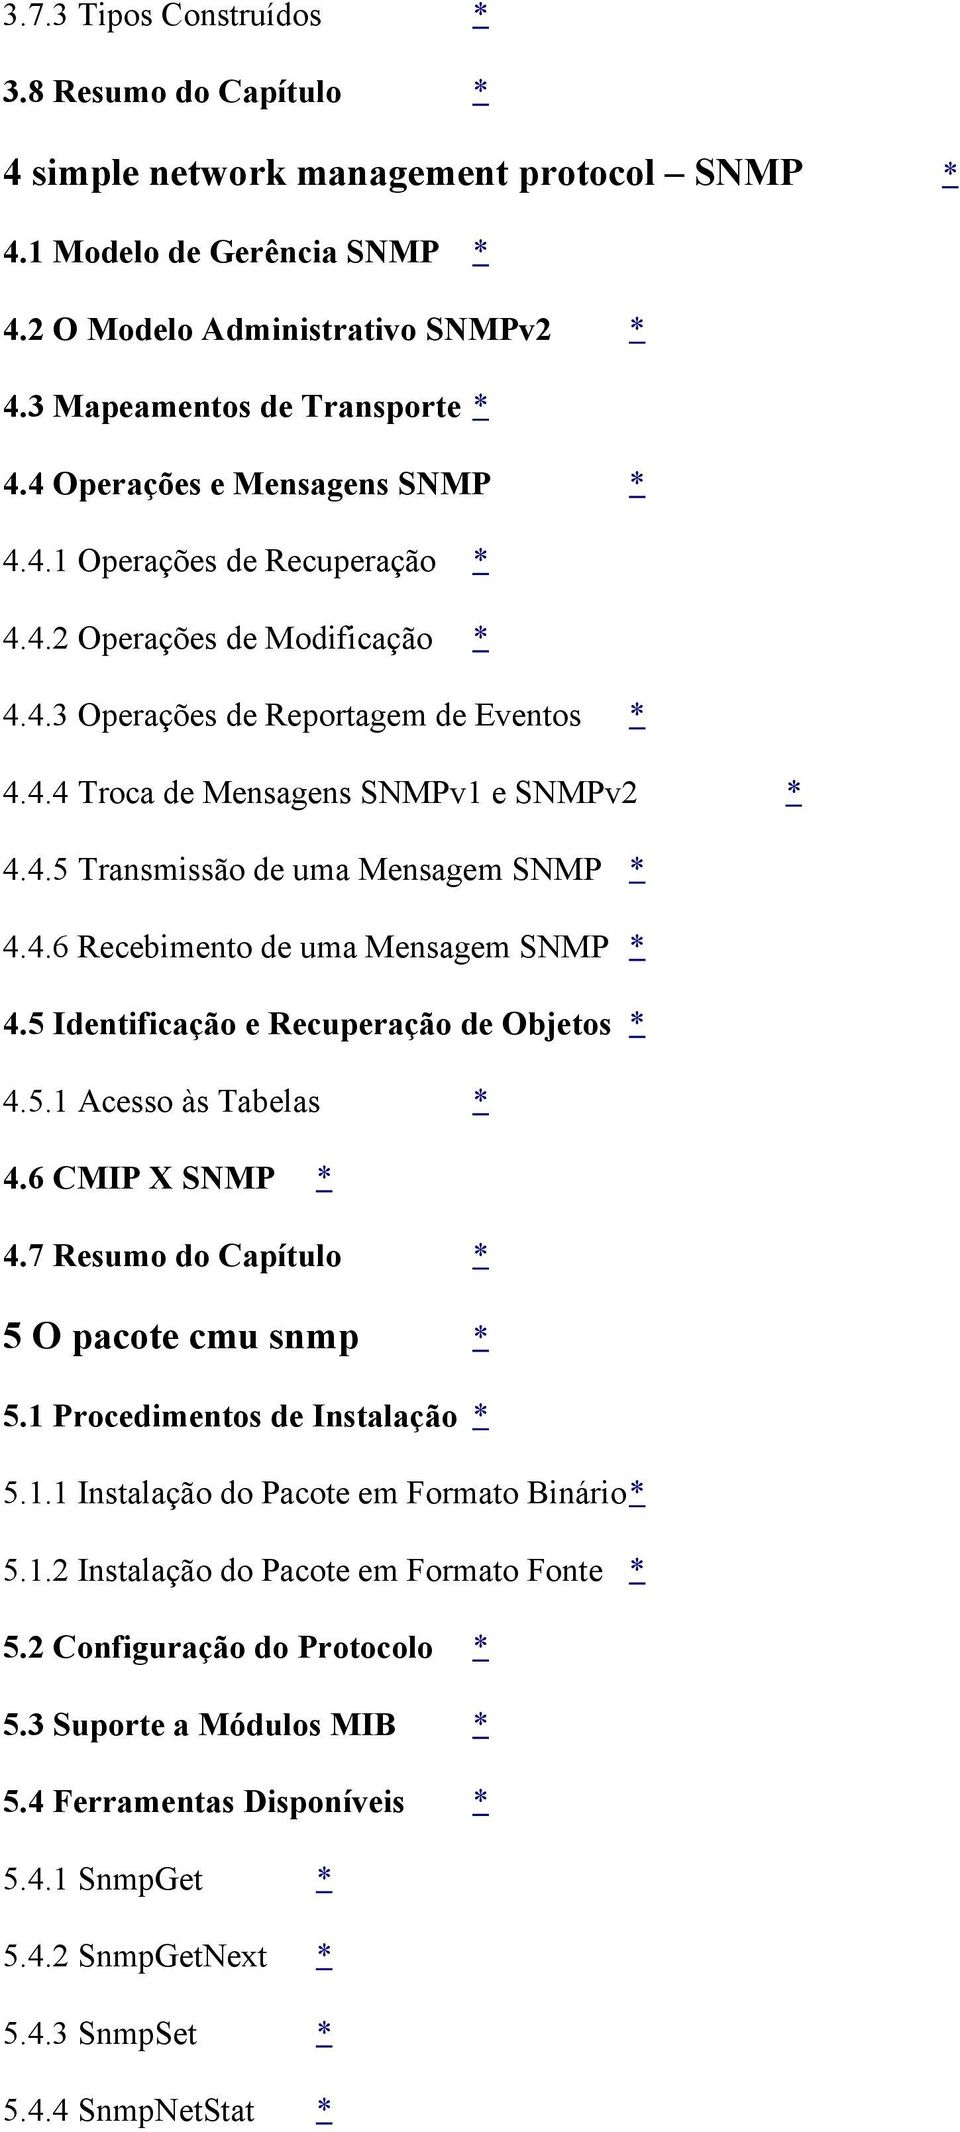 4.6 Recebimento de uma Mensagem SNMP * 4.5 Identificação e Recuperação de Objetos * 4.5.1 Acesso às Tabelas * 4.6 CMIP X SNMP * 4.7 Resumo do Capítulo * 5 O pacote cmu snmp * 5.